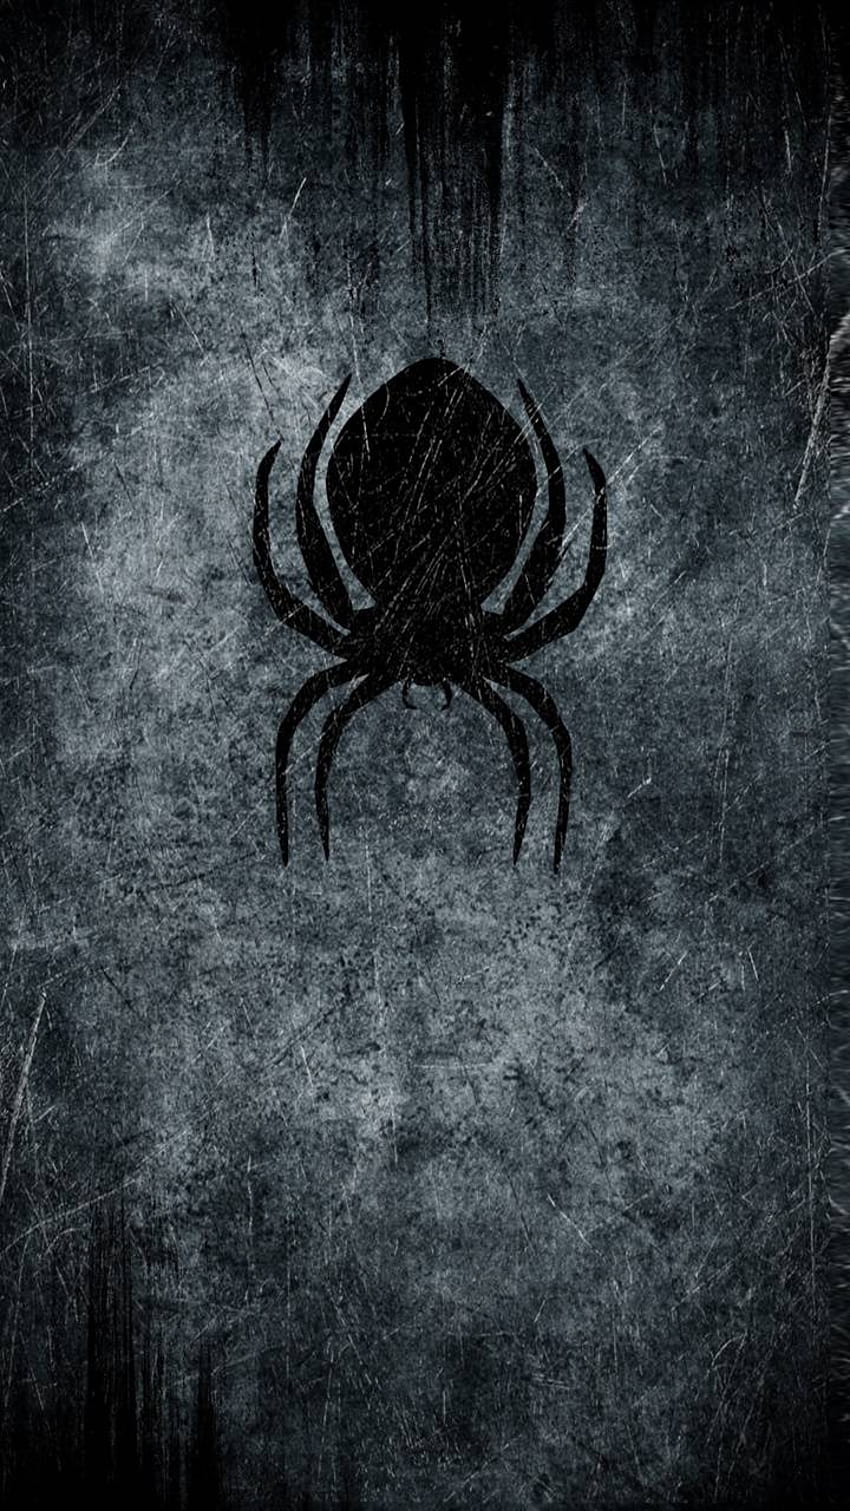 Bạn có muốn thưởng thức hình ảnh nhện đen đầy quyến rũ và bí ẩn? Hãy cùng khám phá những đường nét đen tối của nhện này, đầy sức hút và ám ảnh.